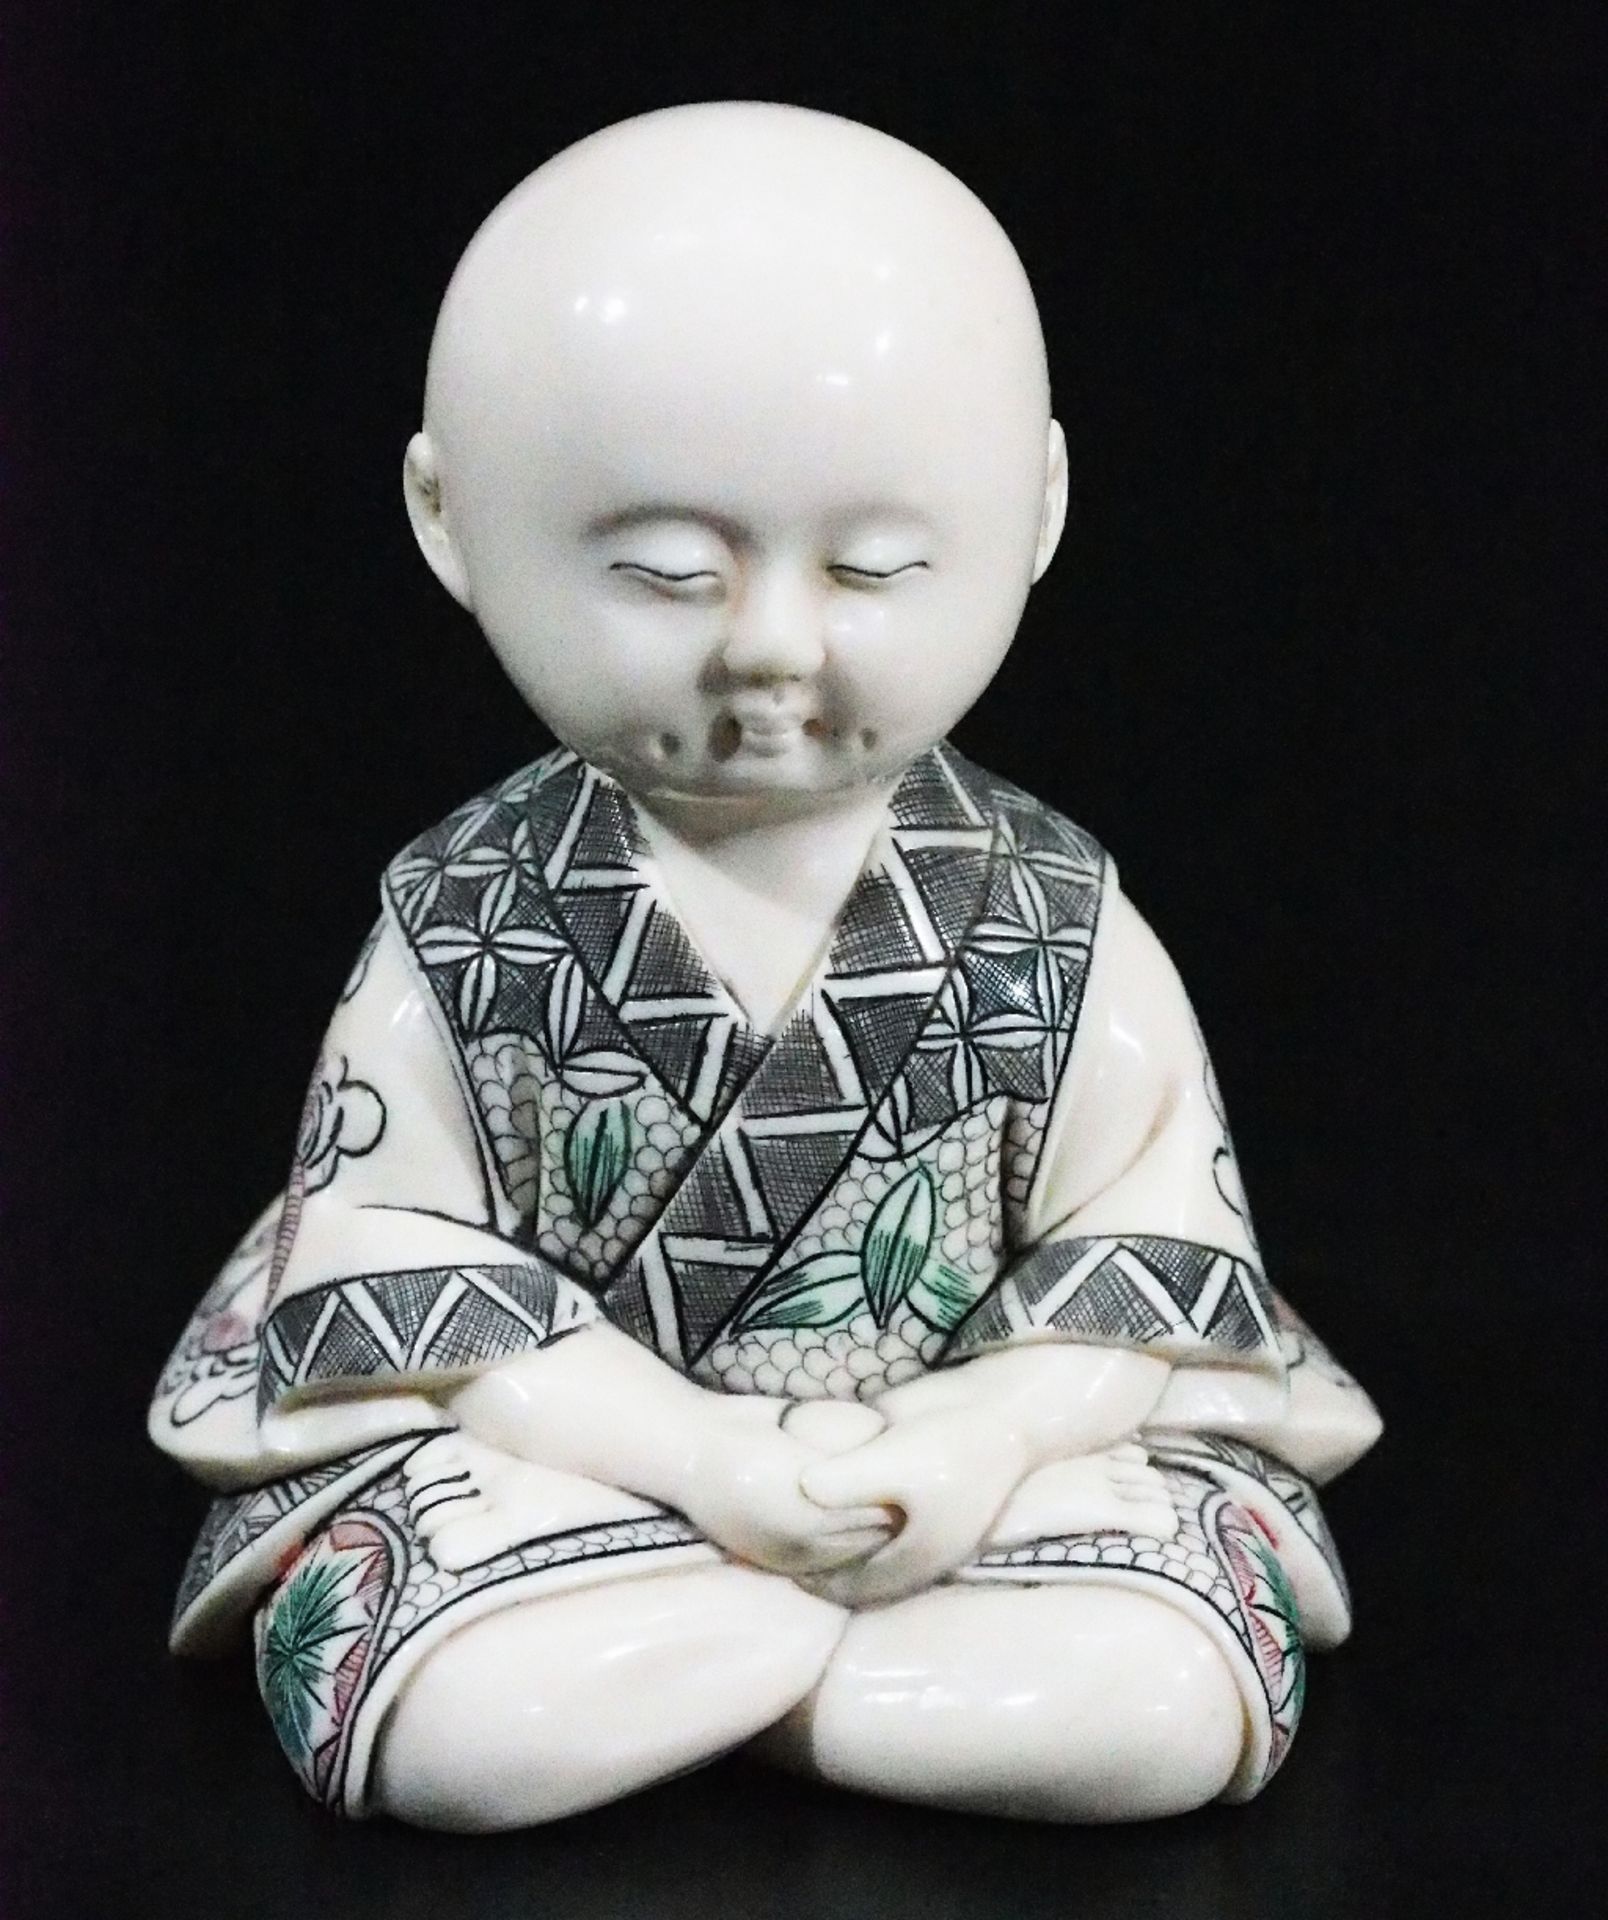 Kind-Buddha meditierend. Asien.